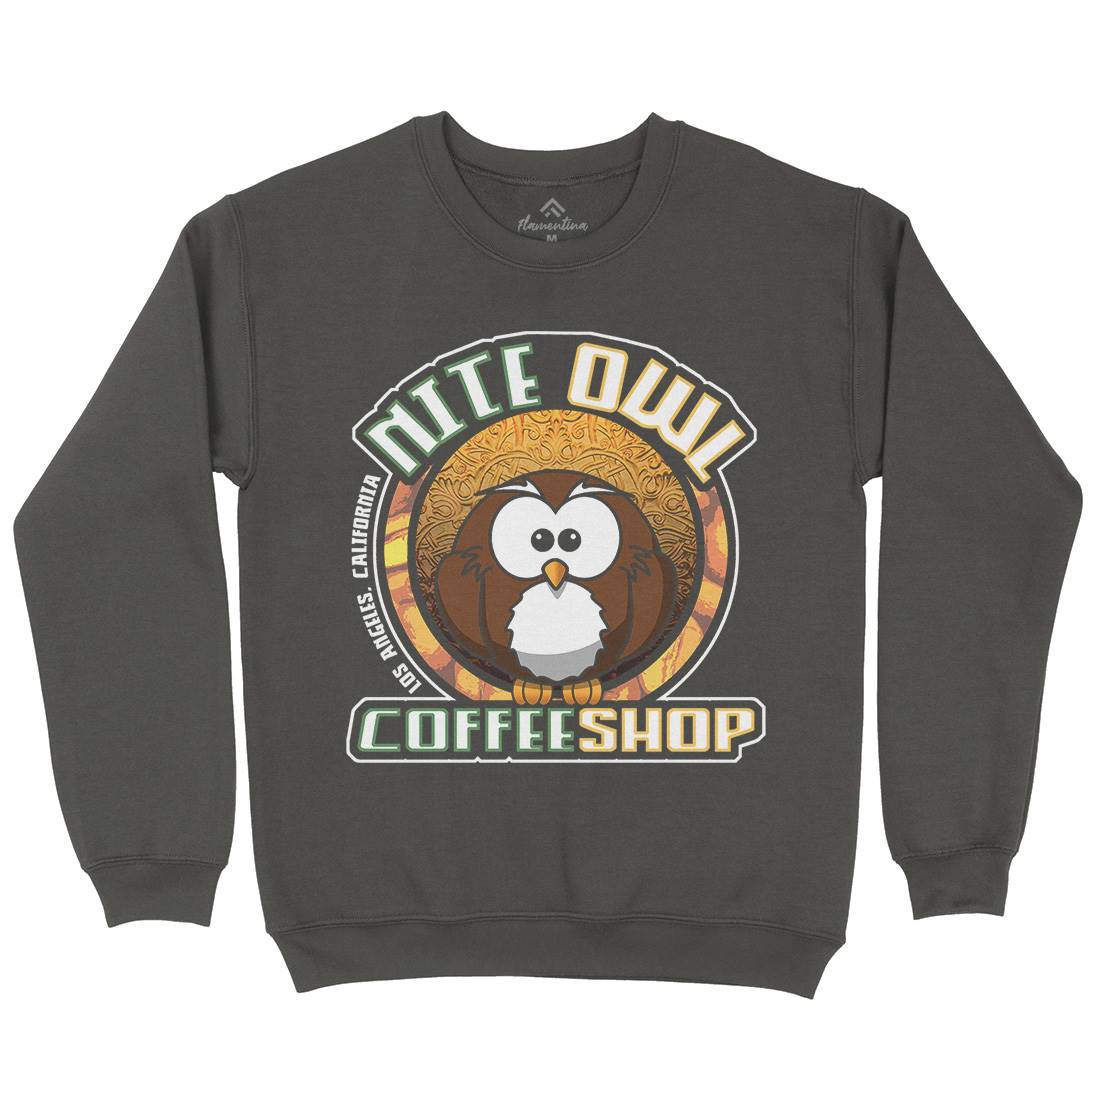 Nite Owl Mens Crew Neck Sweatshirt Drinks D416